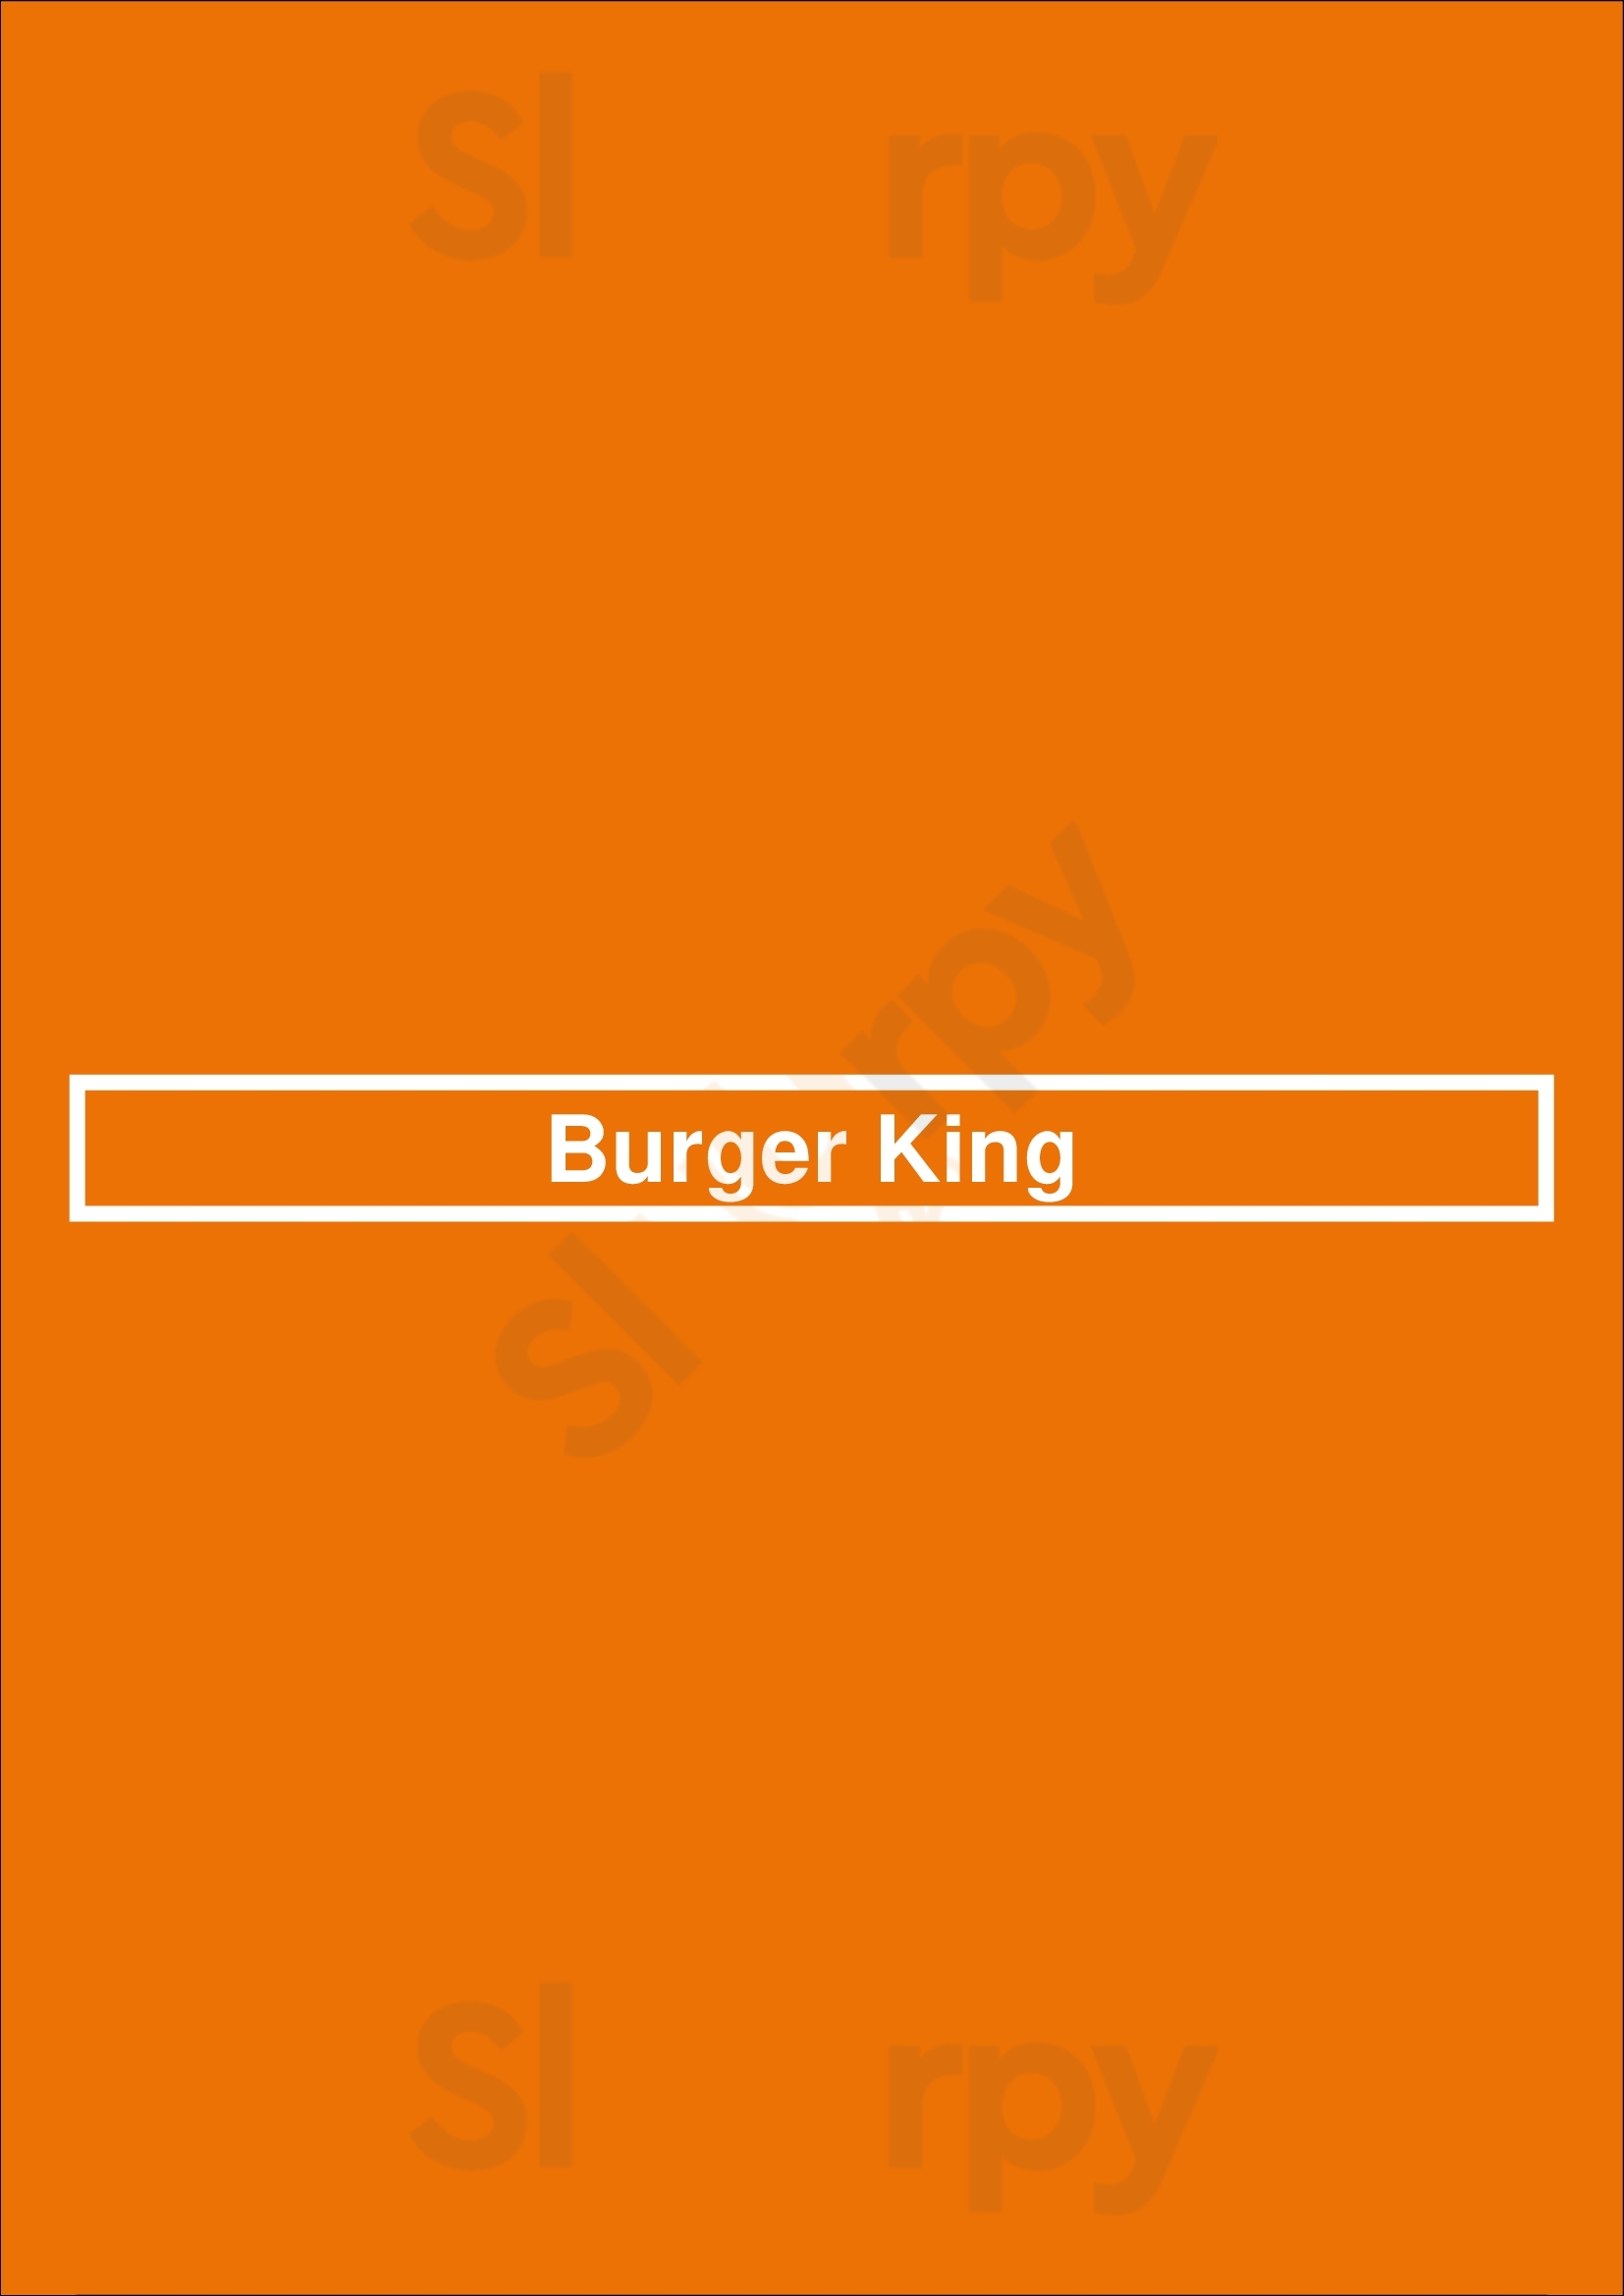 Burger King Kansas City Menu - 1